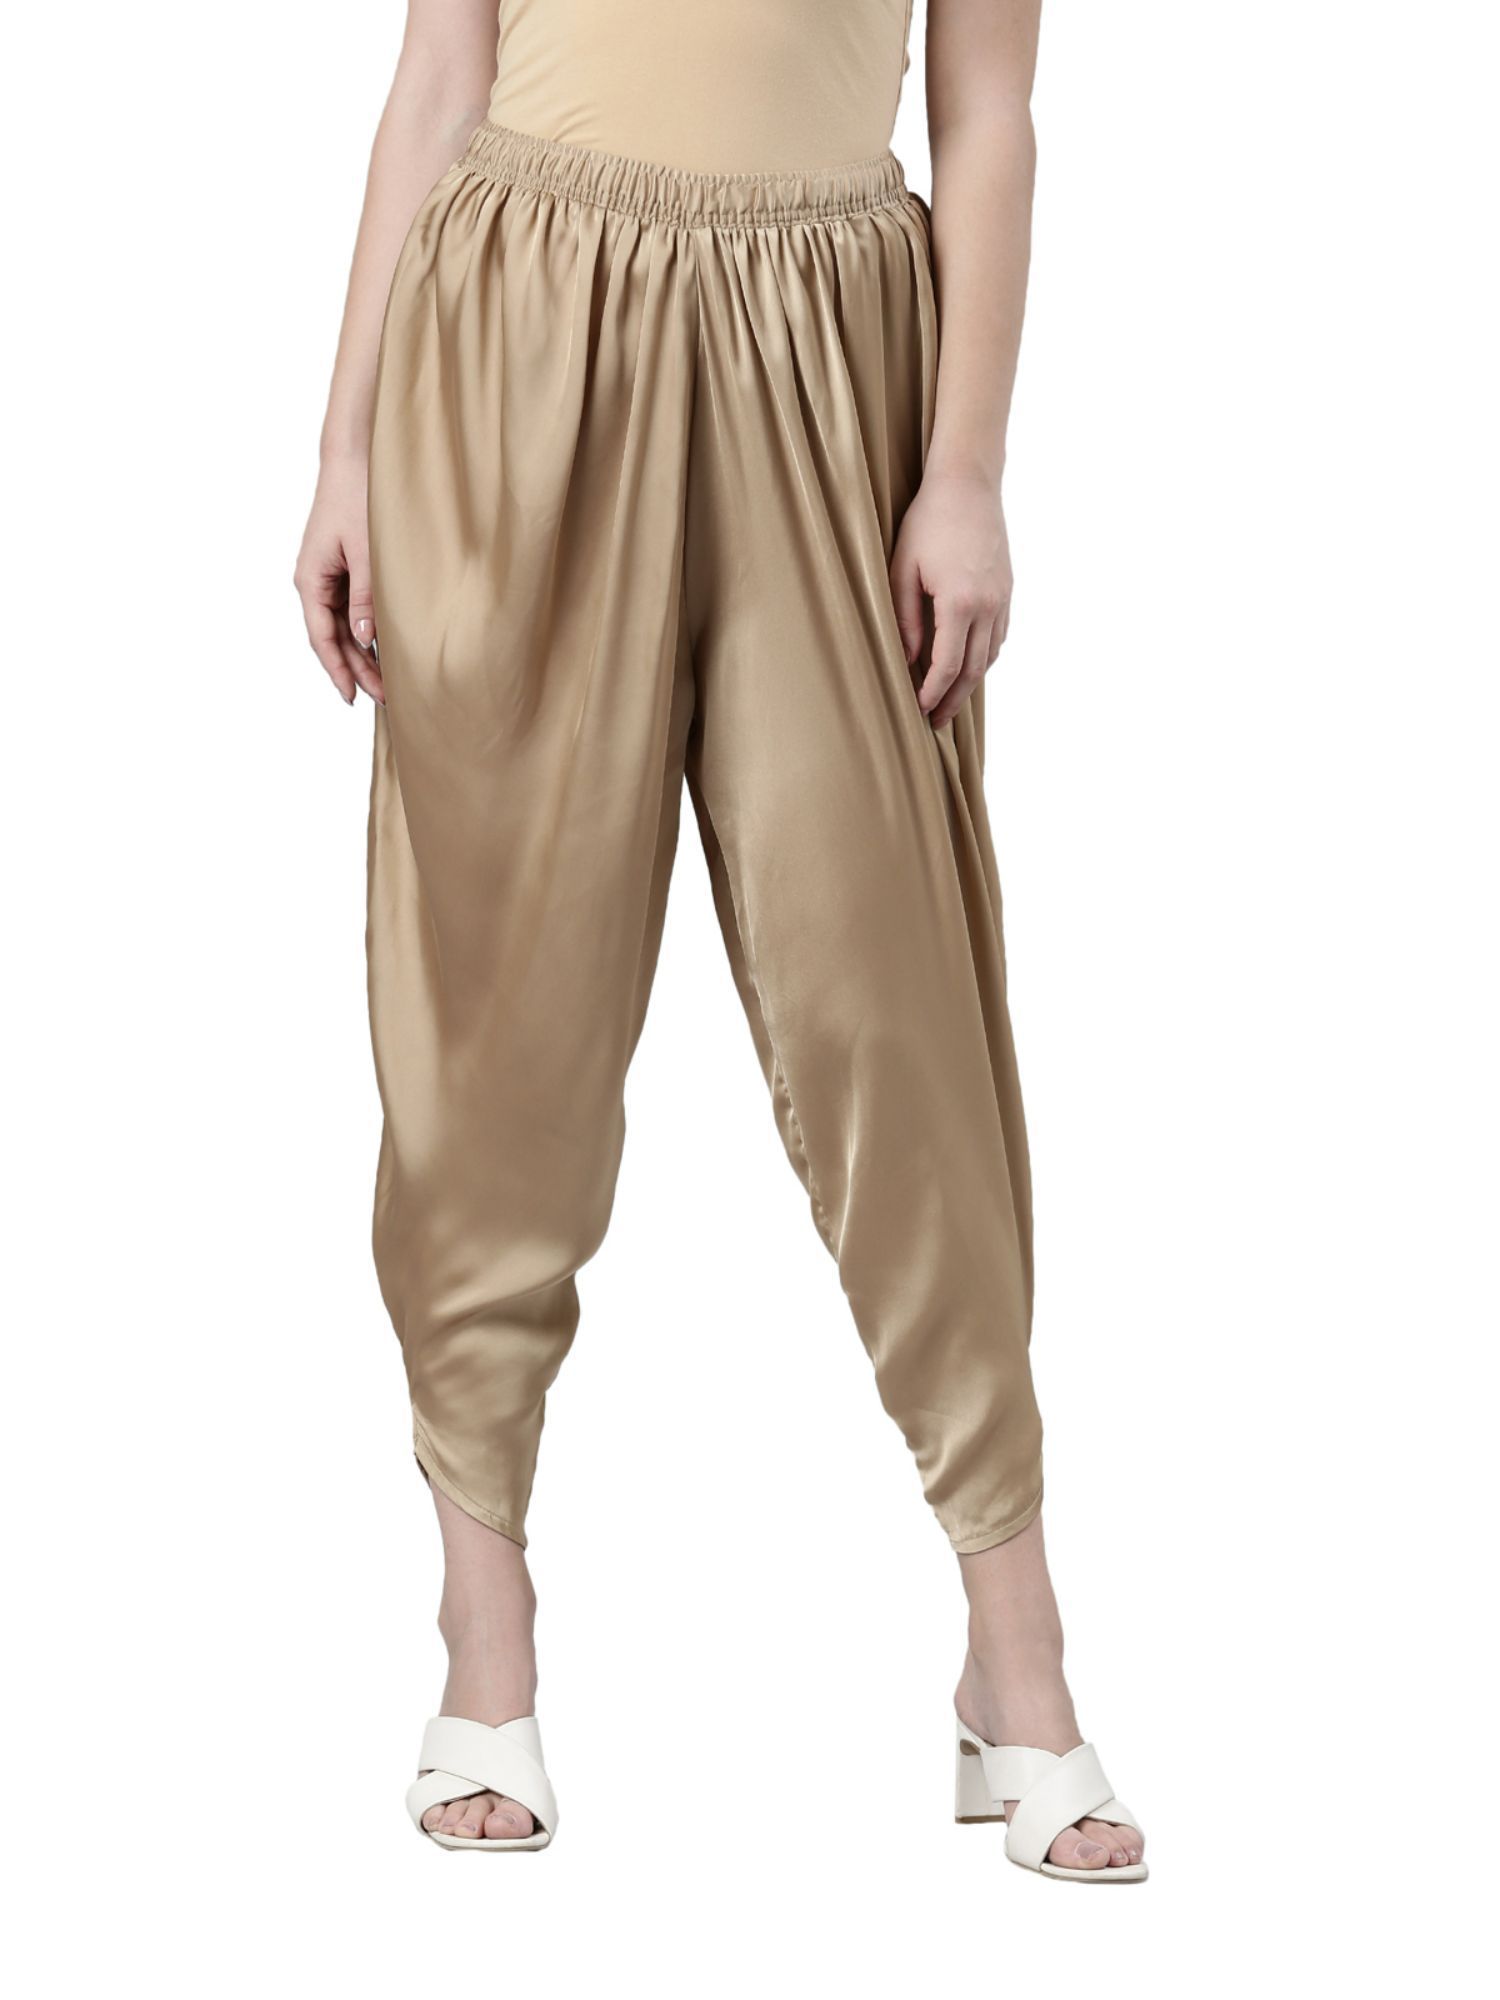 Buy KnDress Women's Designer Trouser (Golden) (Large) at Amazon.in